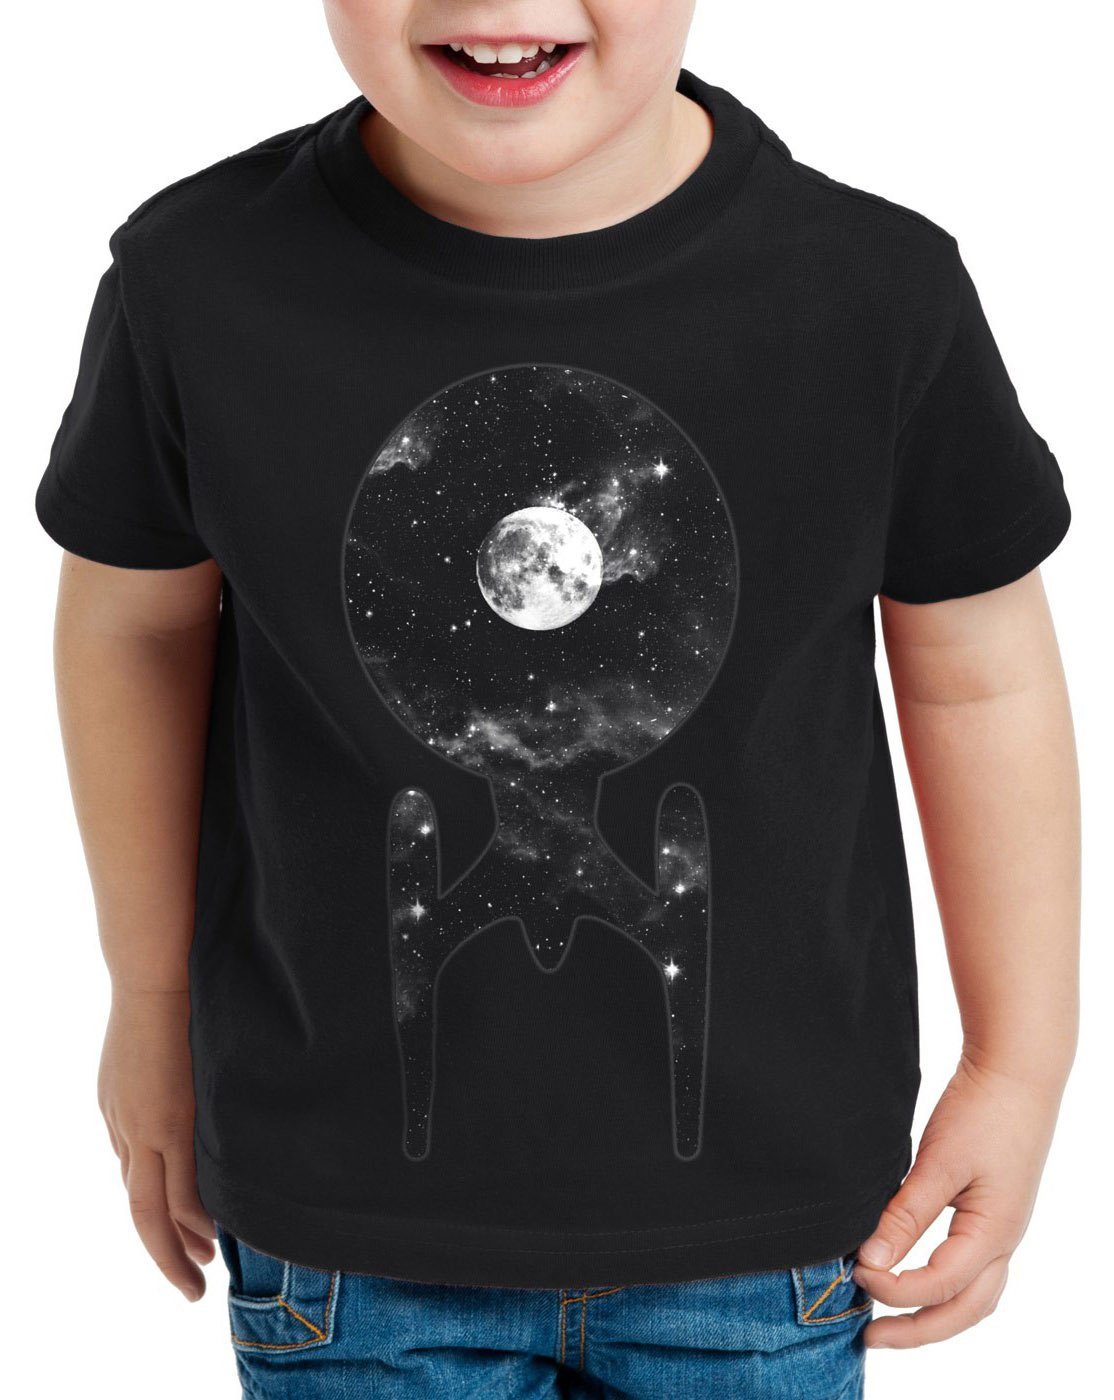 Print-Shirt T-Shirt Trek style3 schwarz star Raumschiff trekkie Kinder